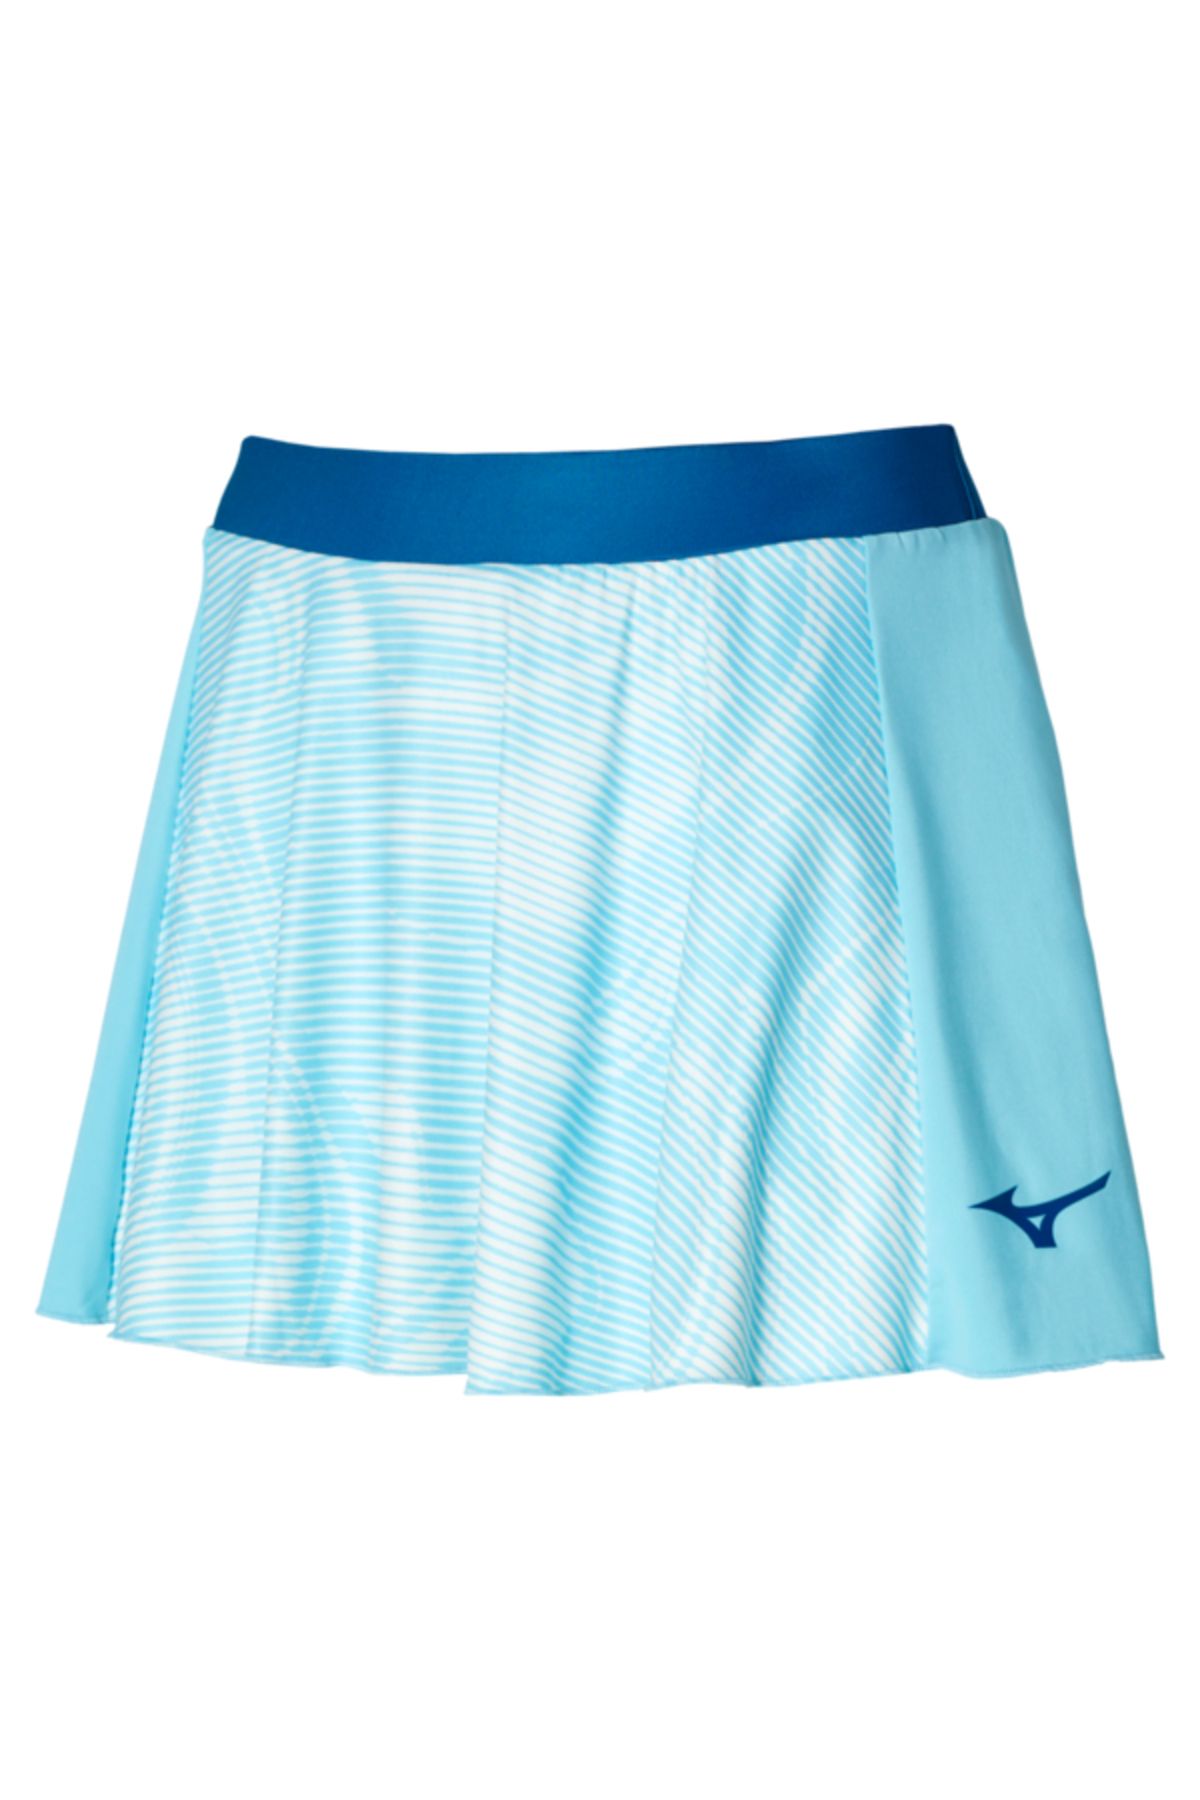 Mizuno Charge Printed Flying Skirt Kadın Etek Mavi